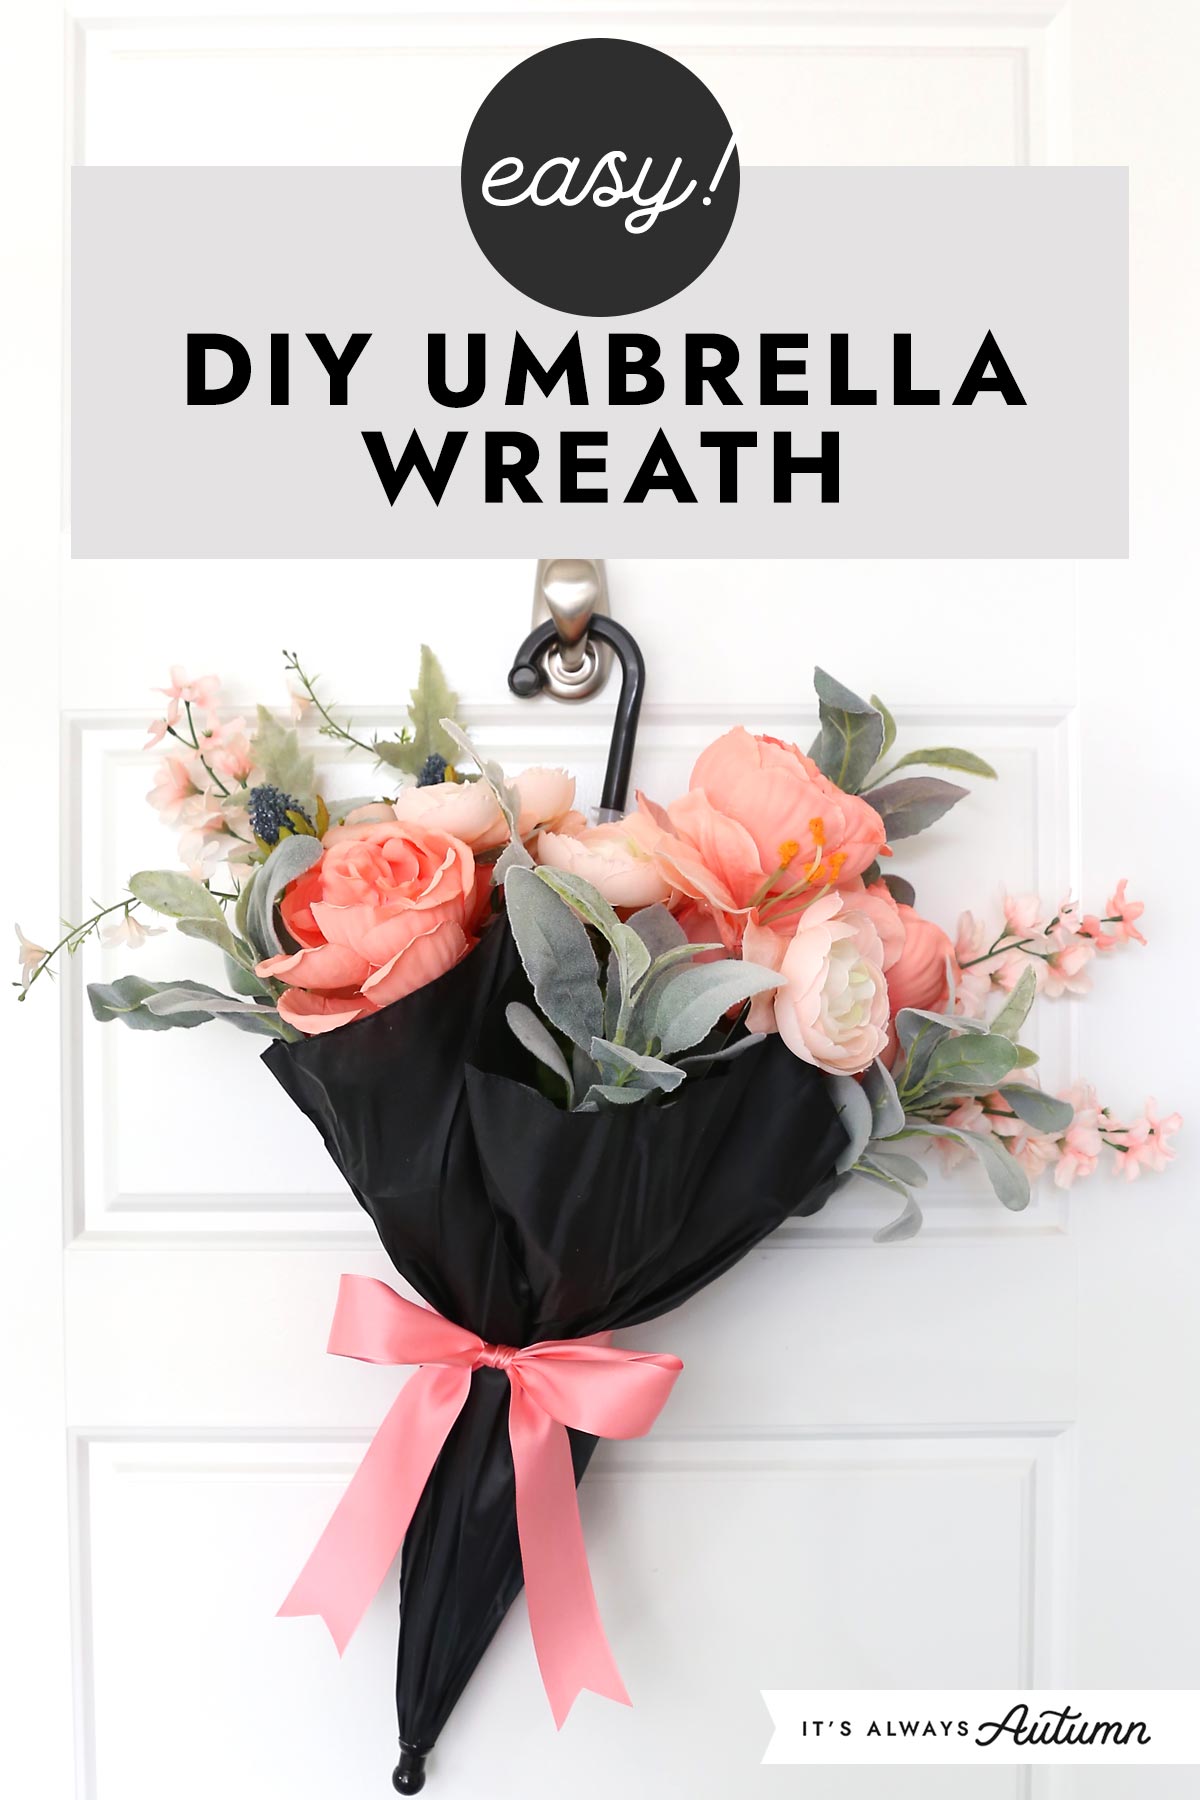 Easy! DIY Umbrella Wreath.